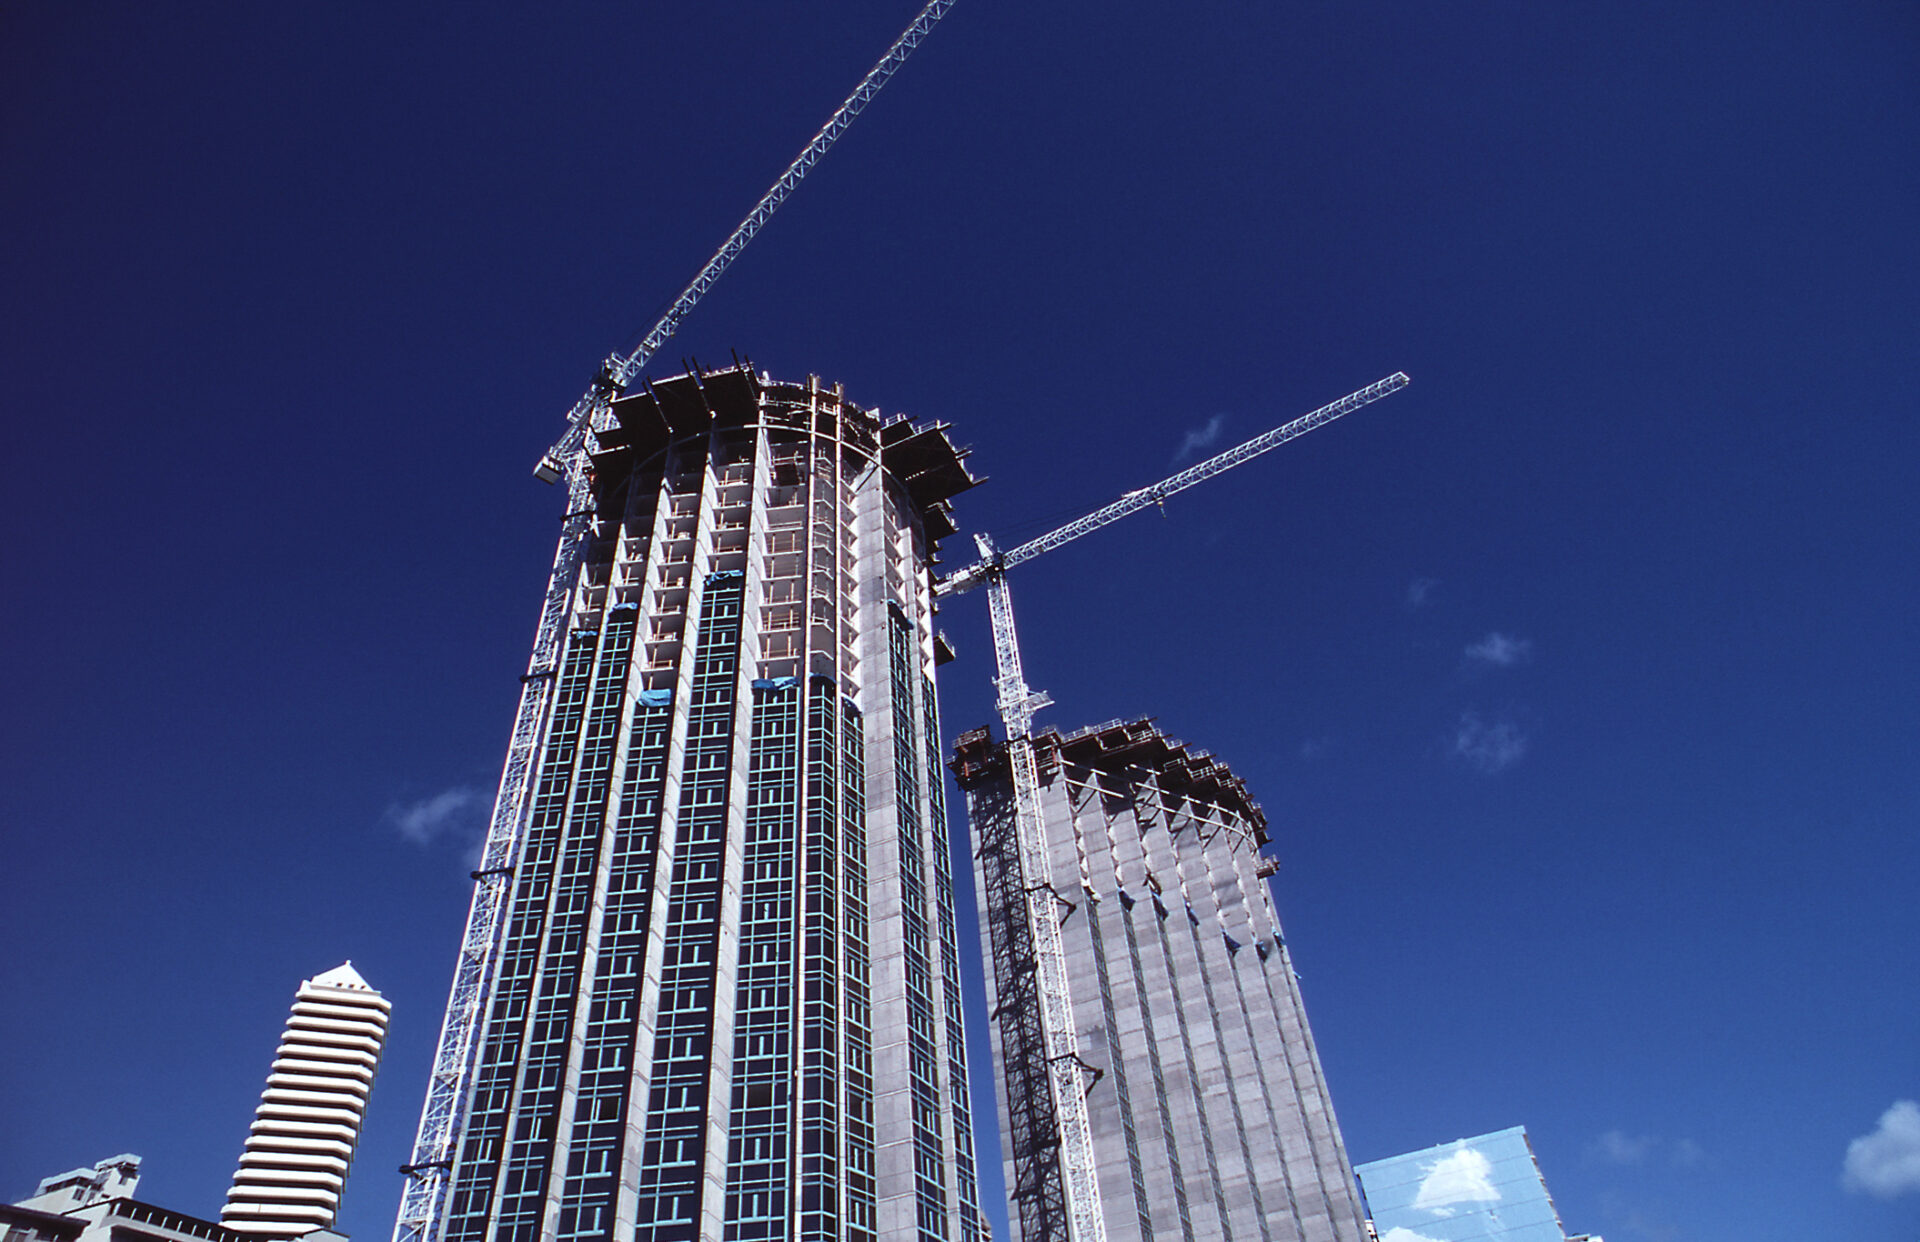 世界一高いビルになる予定で建設中のビルは1008m 2400m計画あり